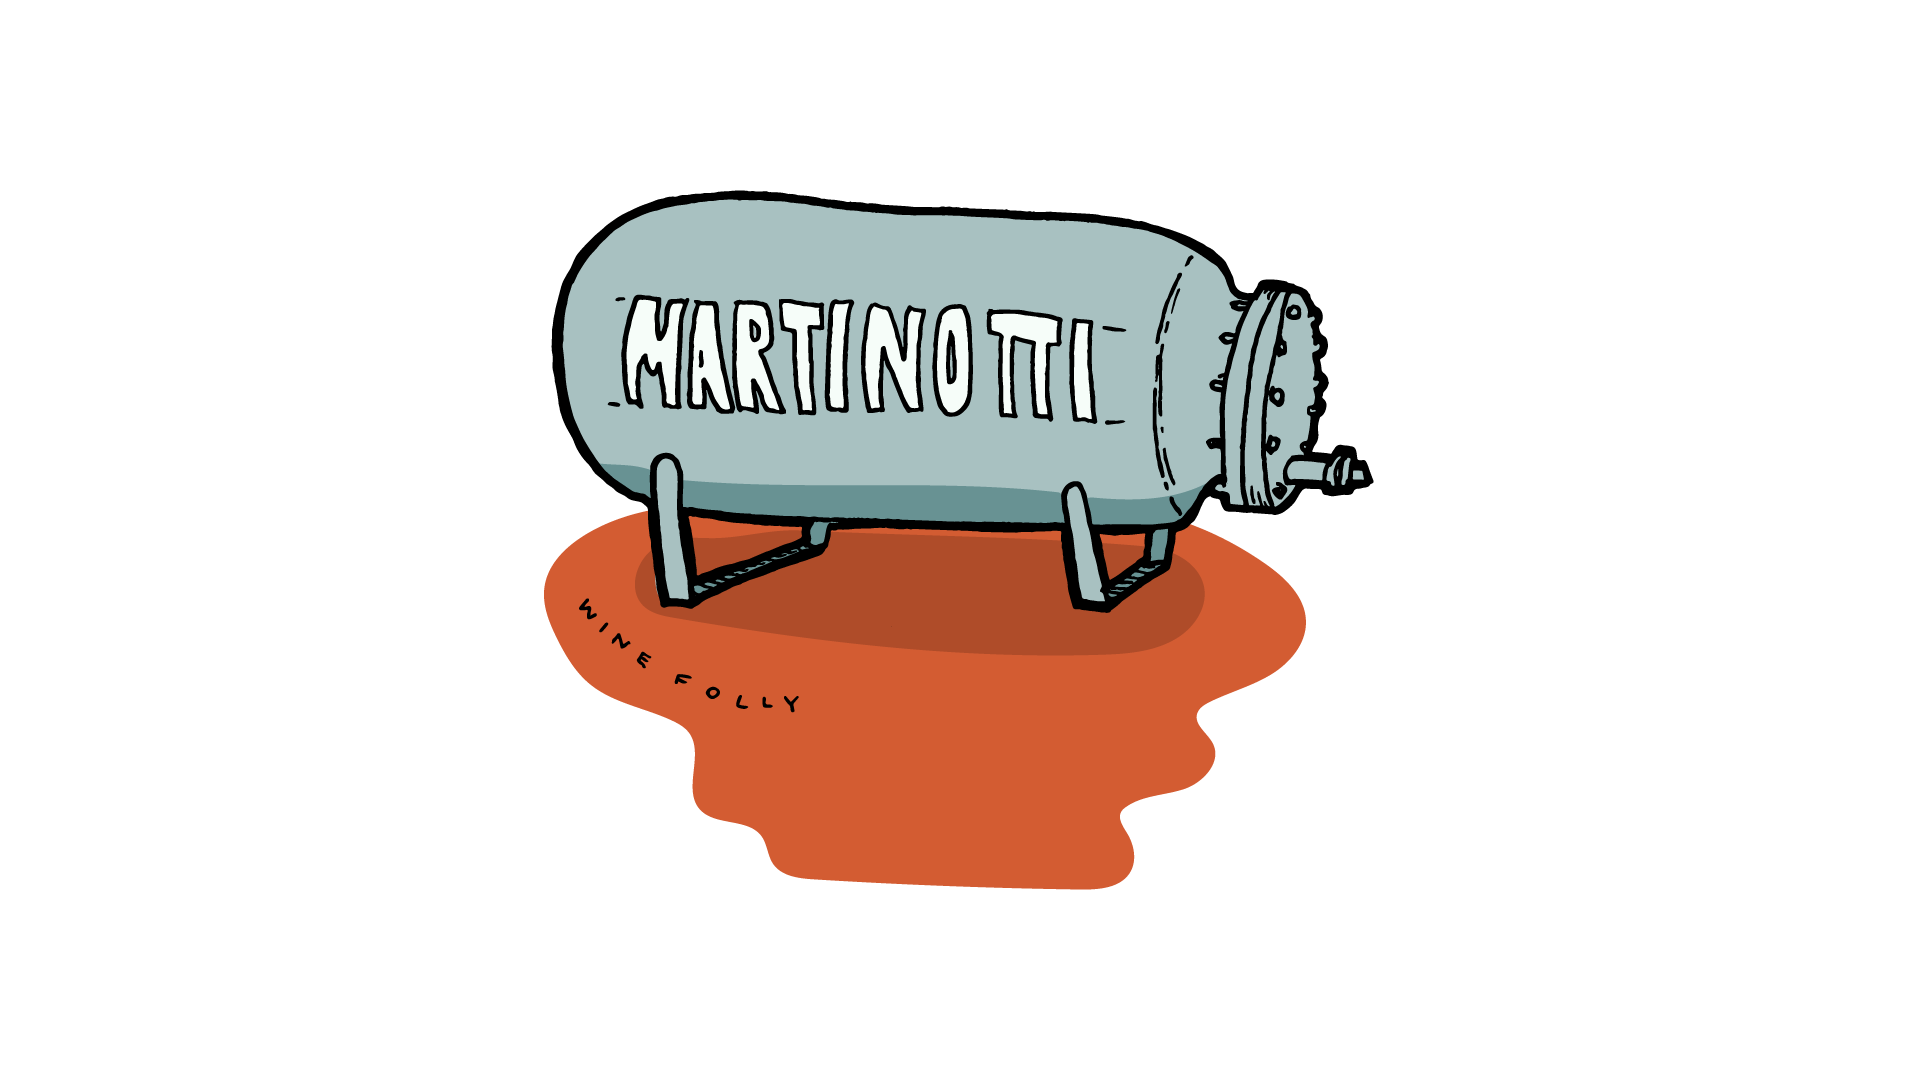 Martinotti Method